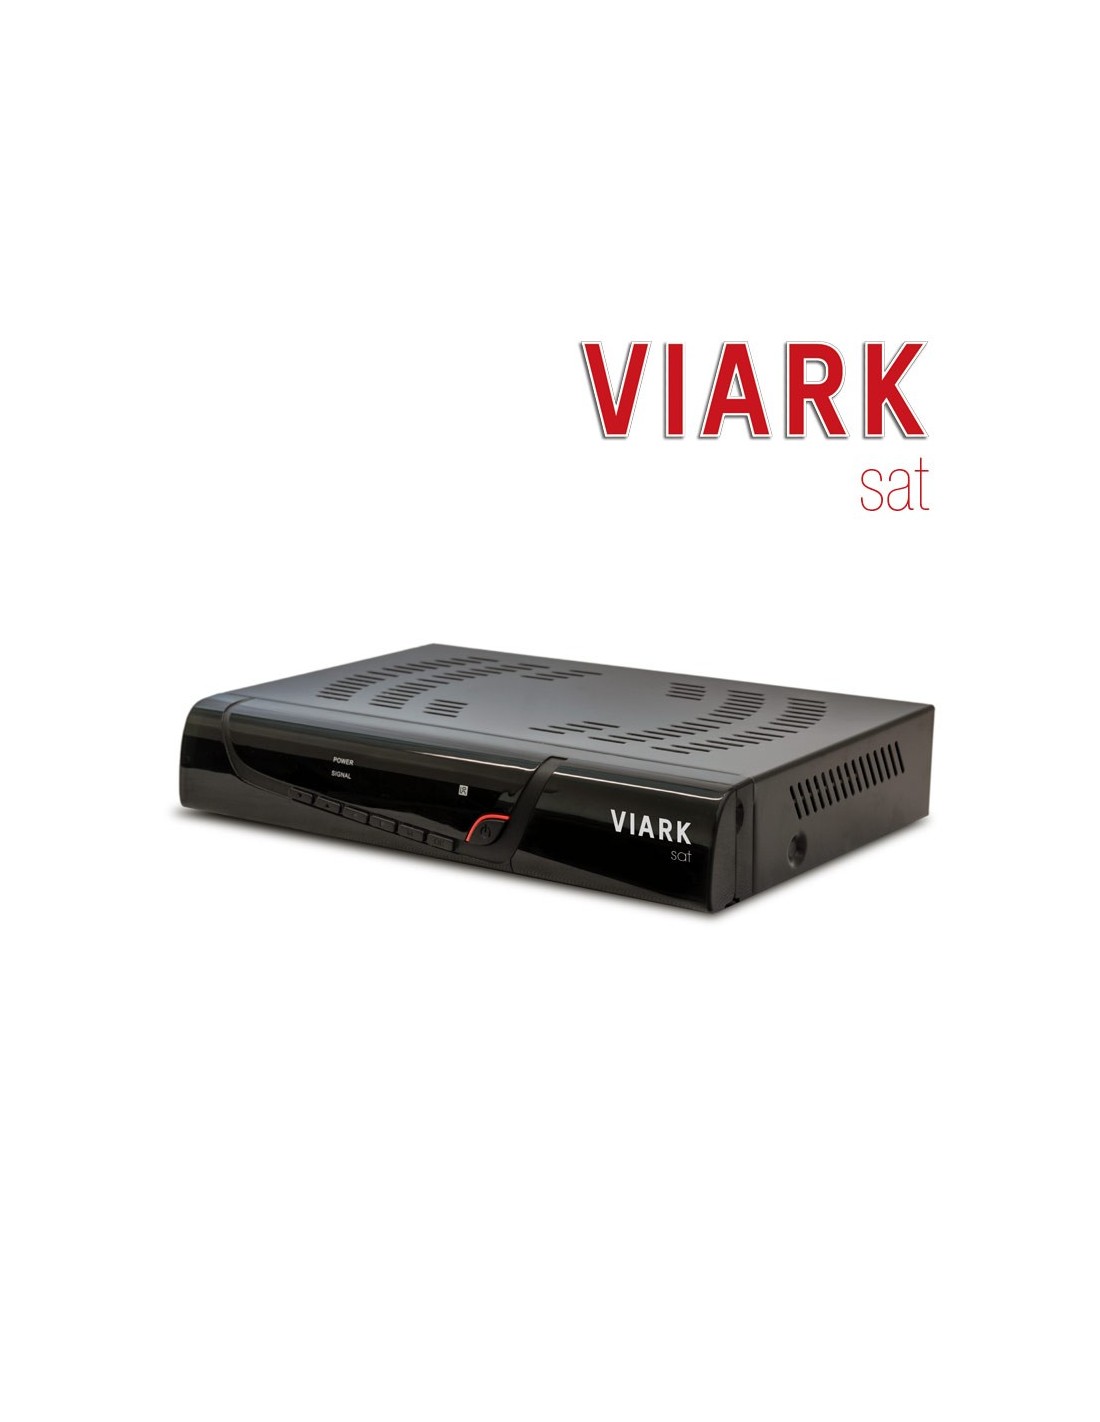 Viark SAT 4K-VK01005 Satellite TV Receiver